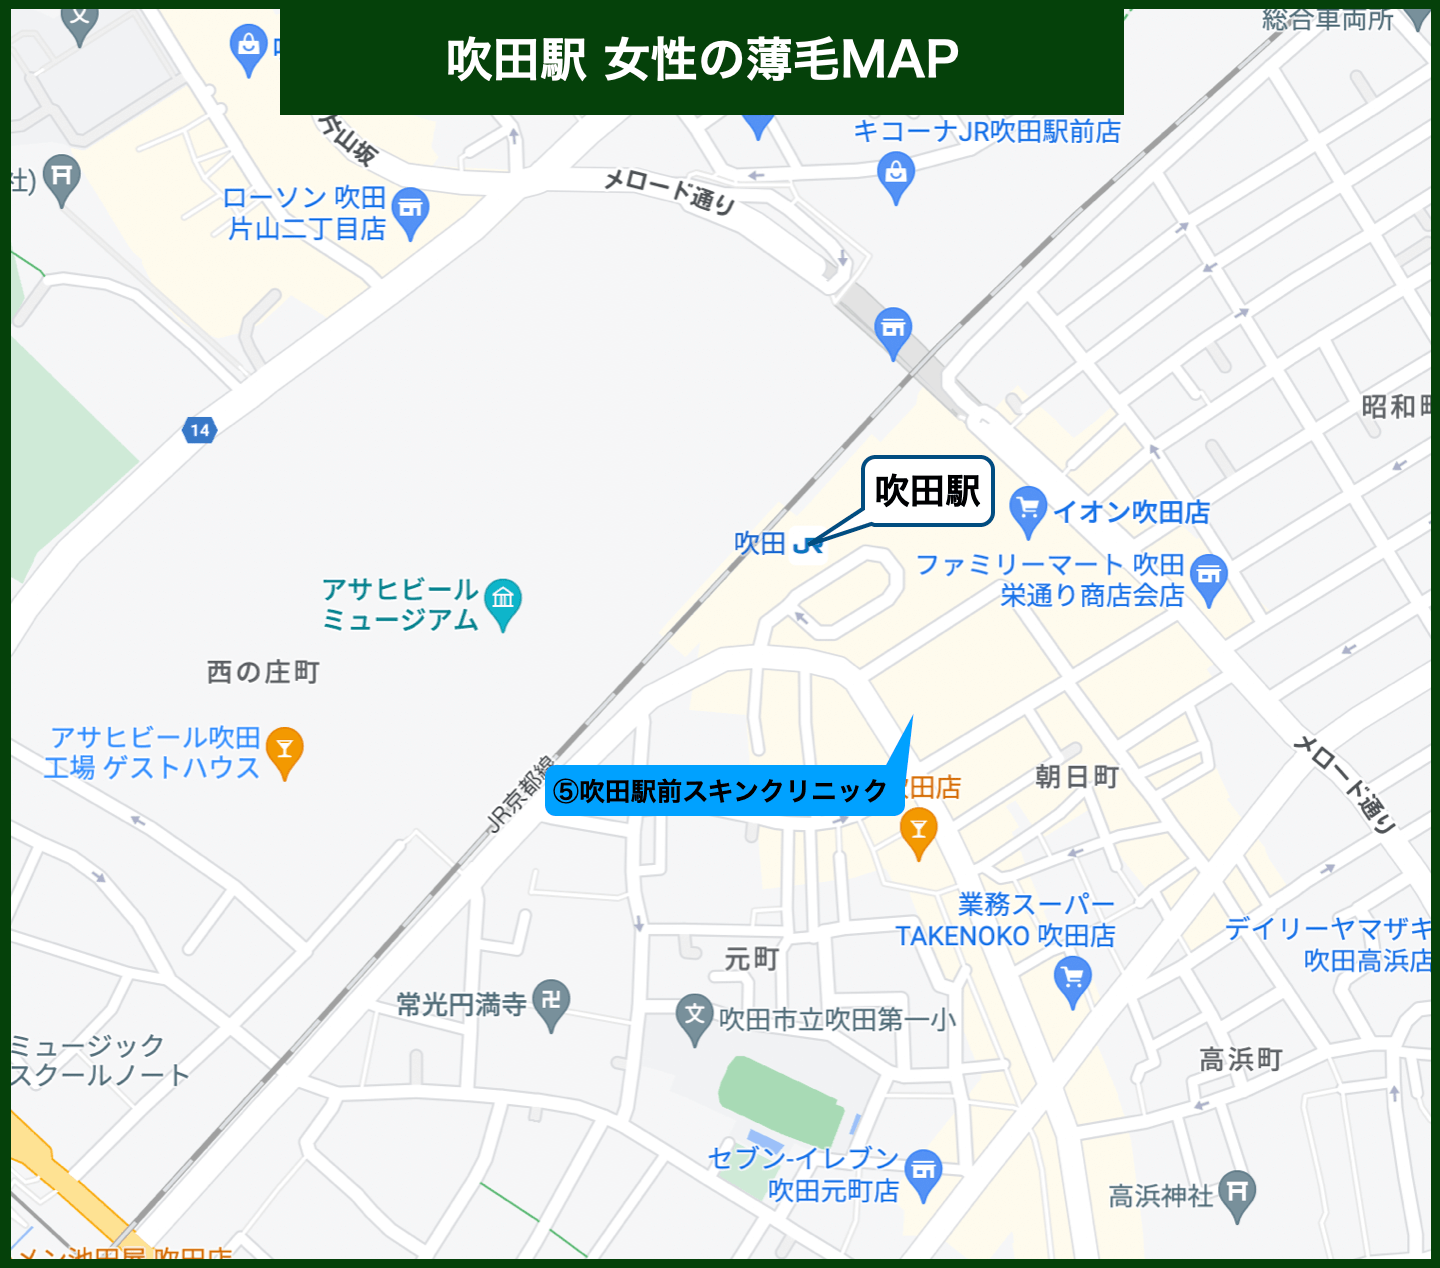 吹田駅女性の薄毛MAP